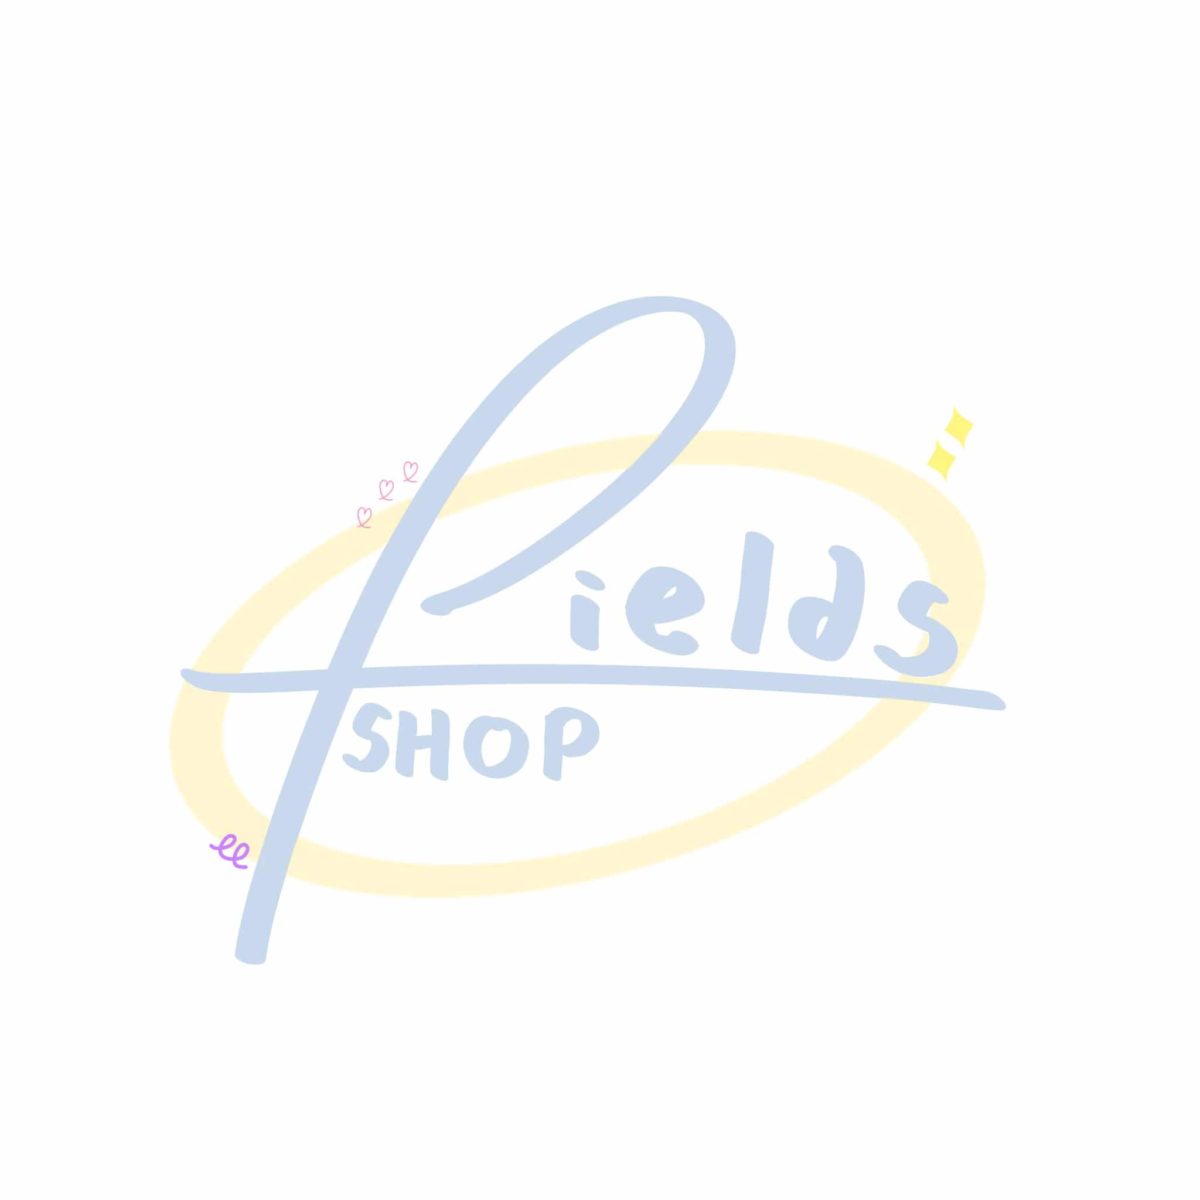 Fields Shop